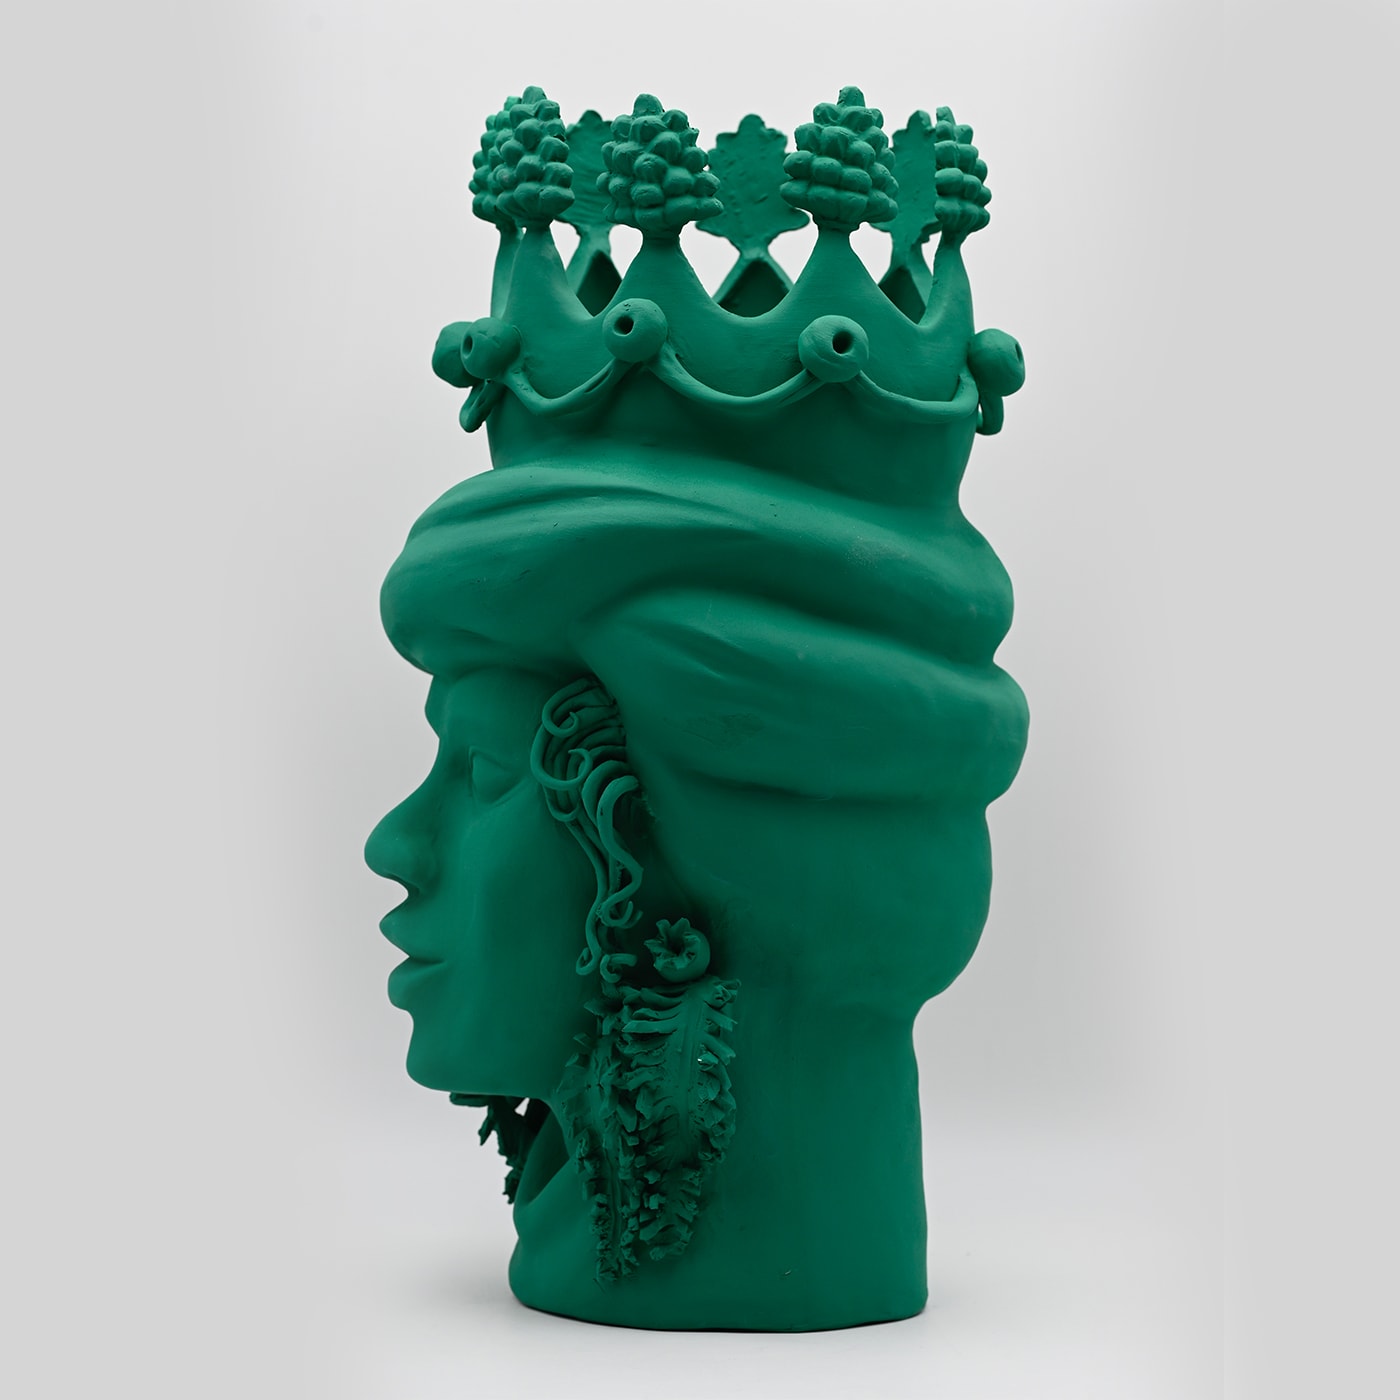 Moor's Head Green Sculpture